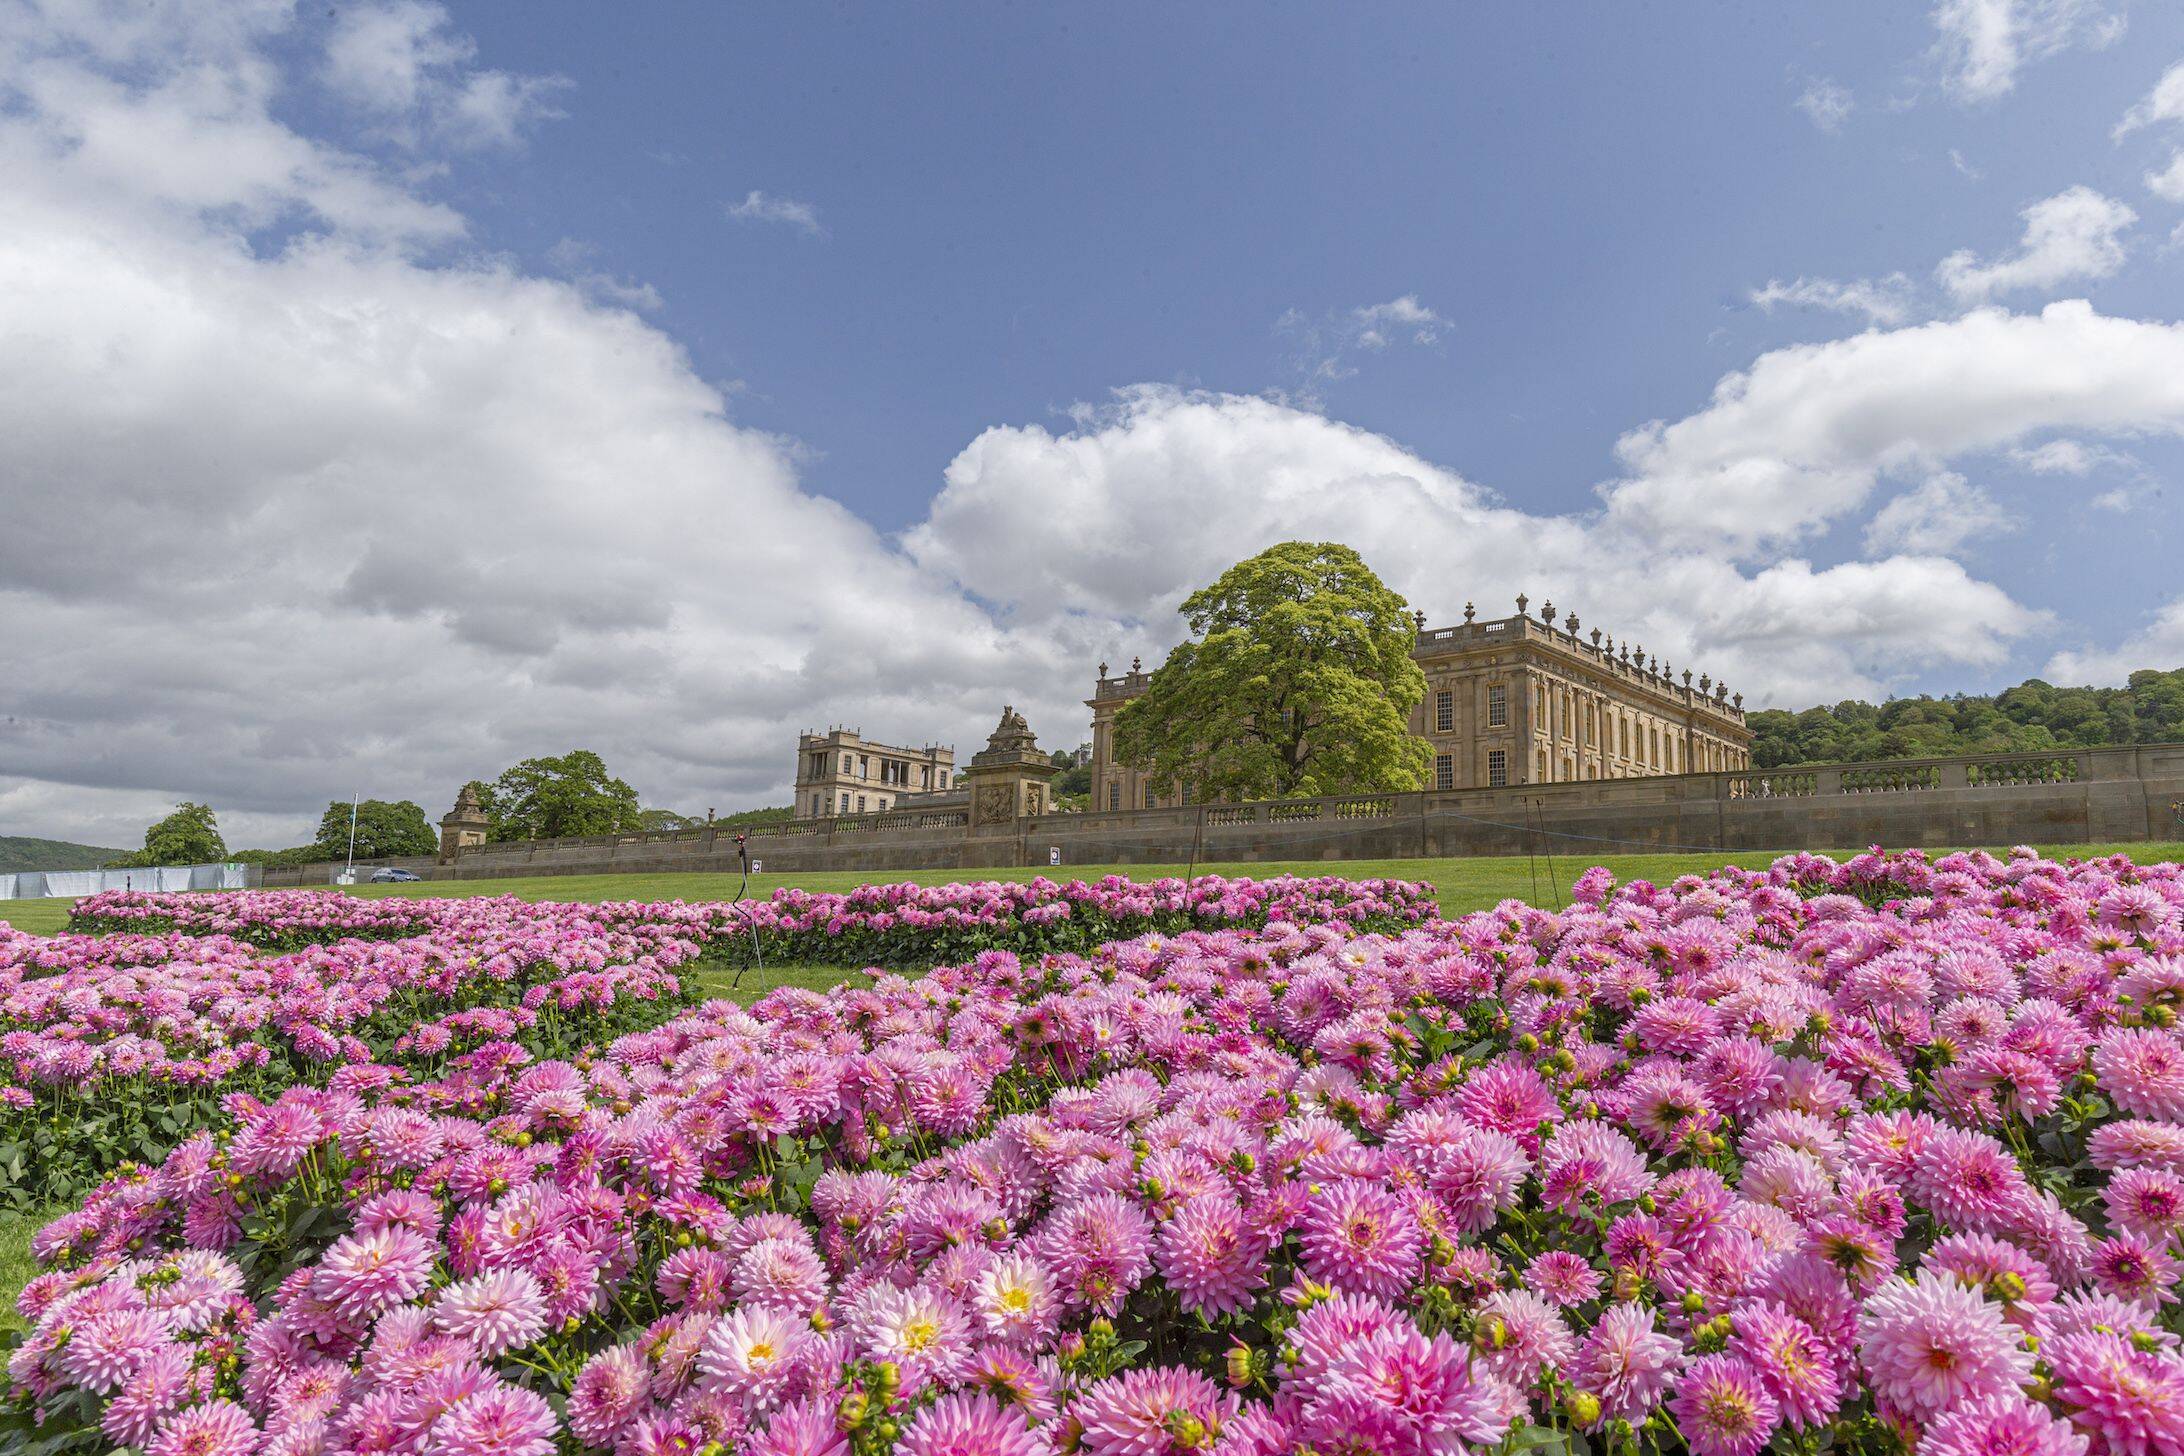 O jardim da Chatsworth House possui 737 hectares e a maneira como é organizado foi mudando ao longo dos séculos, de acordo com quem estava a frente da monarquia britânica. Foto: Reprodução